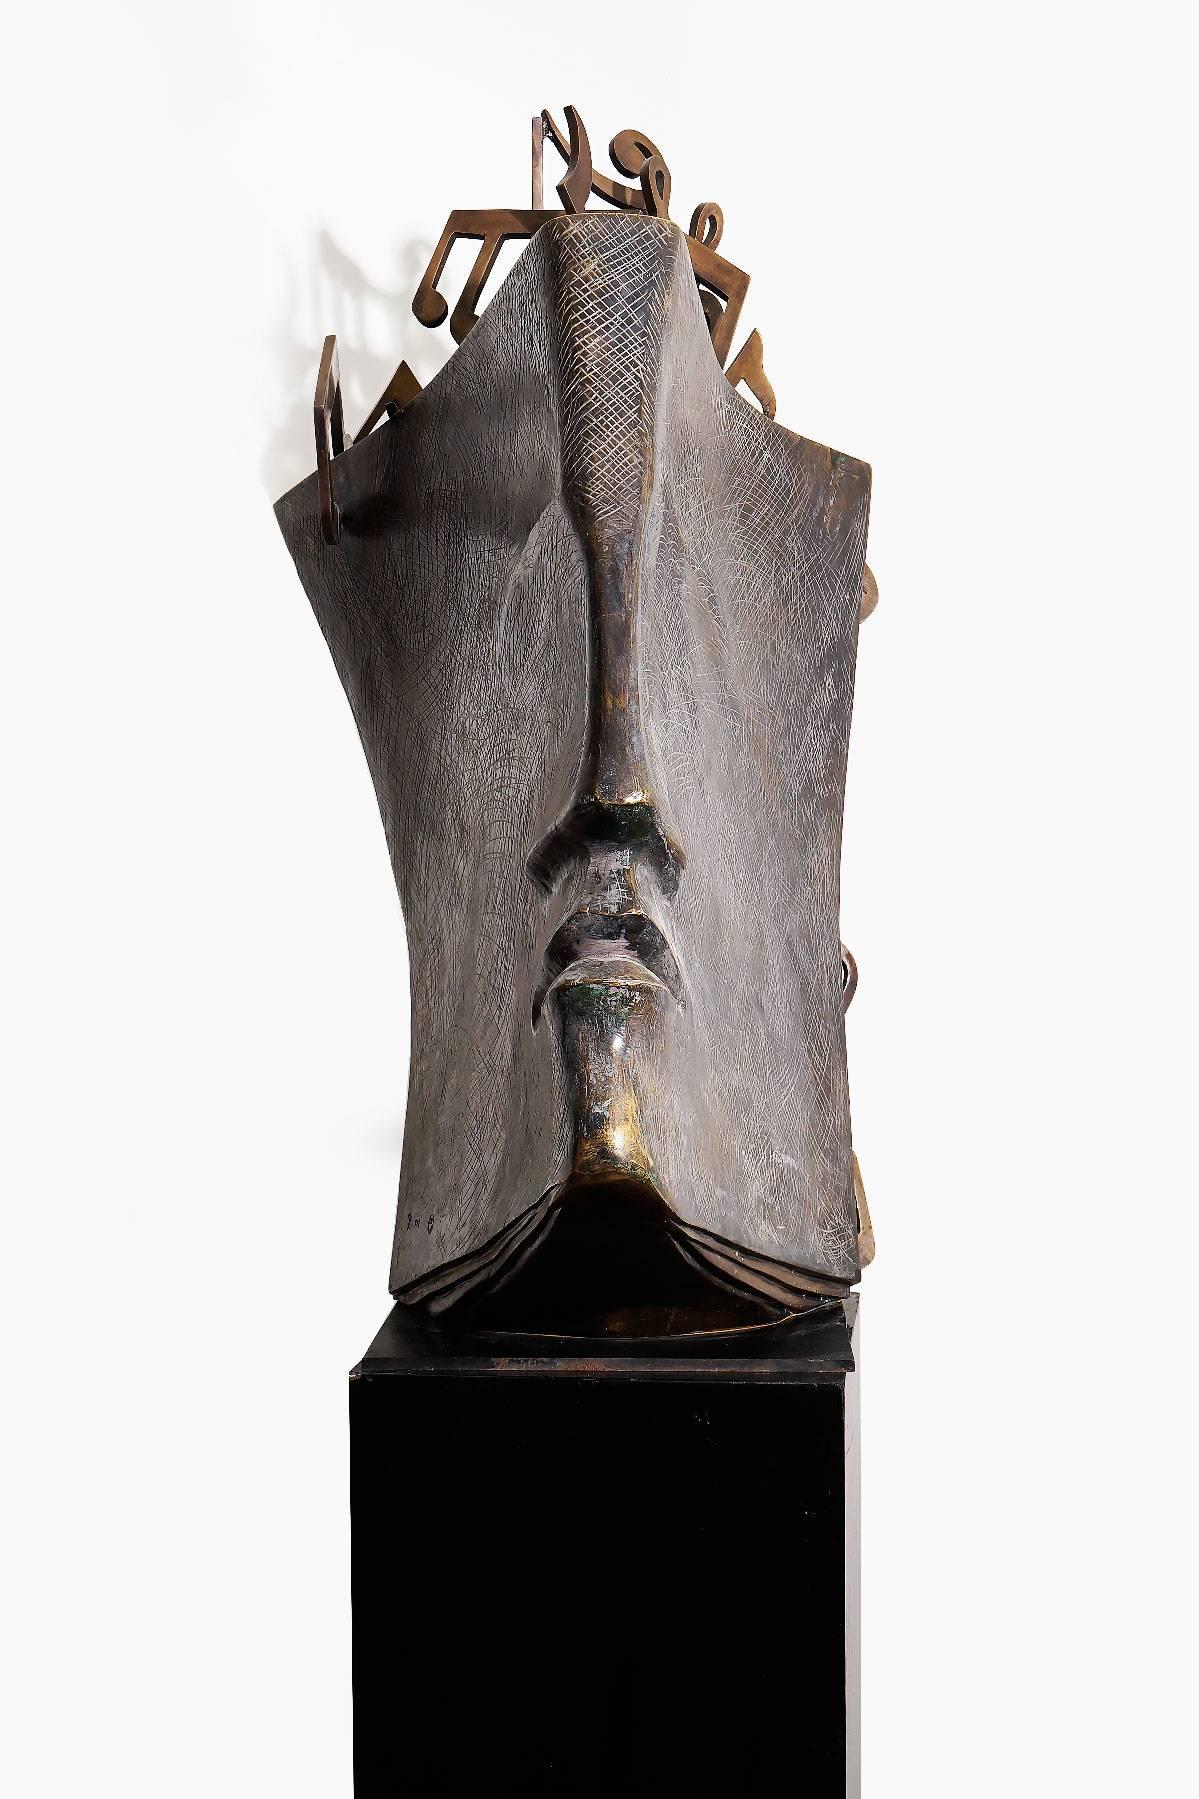 Jacques le Bescond 
Livre de musique
2010 
103 x 63 x 57 cm
Edition II/VIII

Jacques Le Bescond, né en 1945, a commencé à sculpter dès son enfance.  Passionné et autodidacte, il aborde la sculpture par la taille directe, d'abord en bois et en marbre